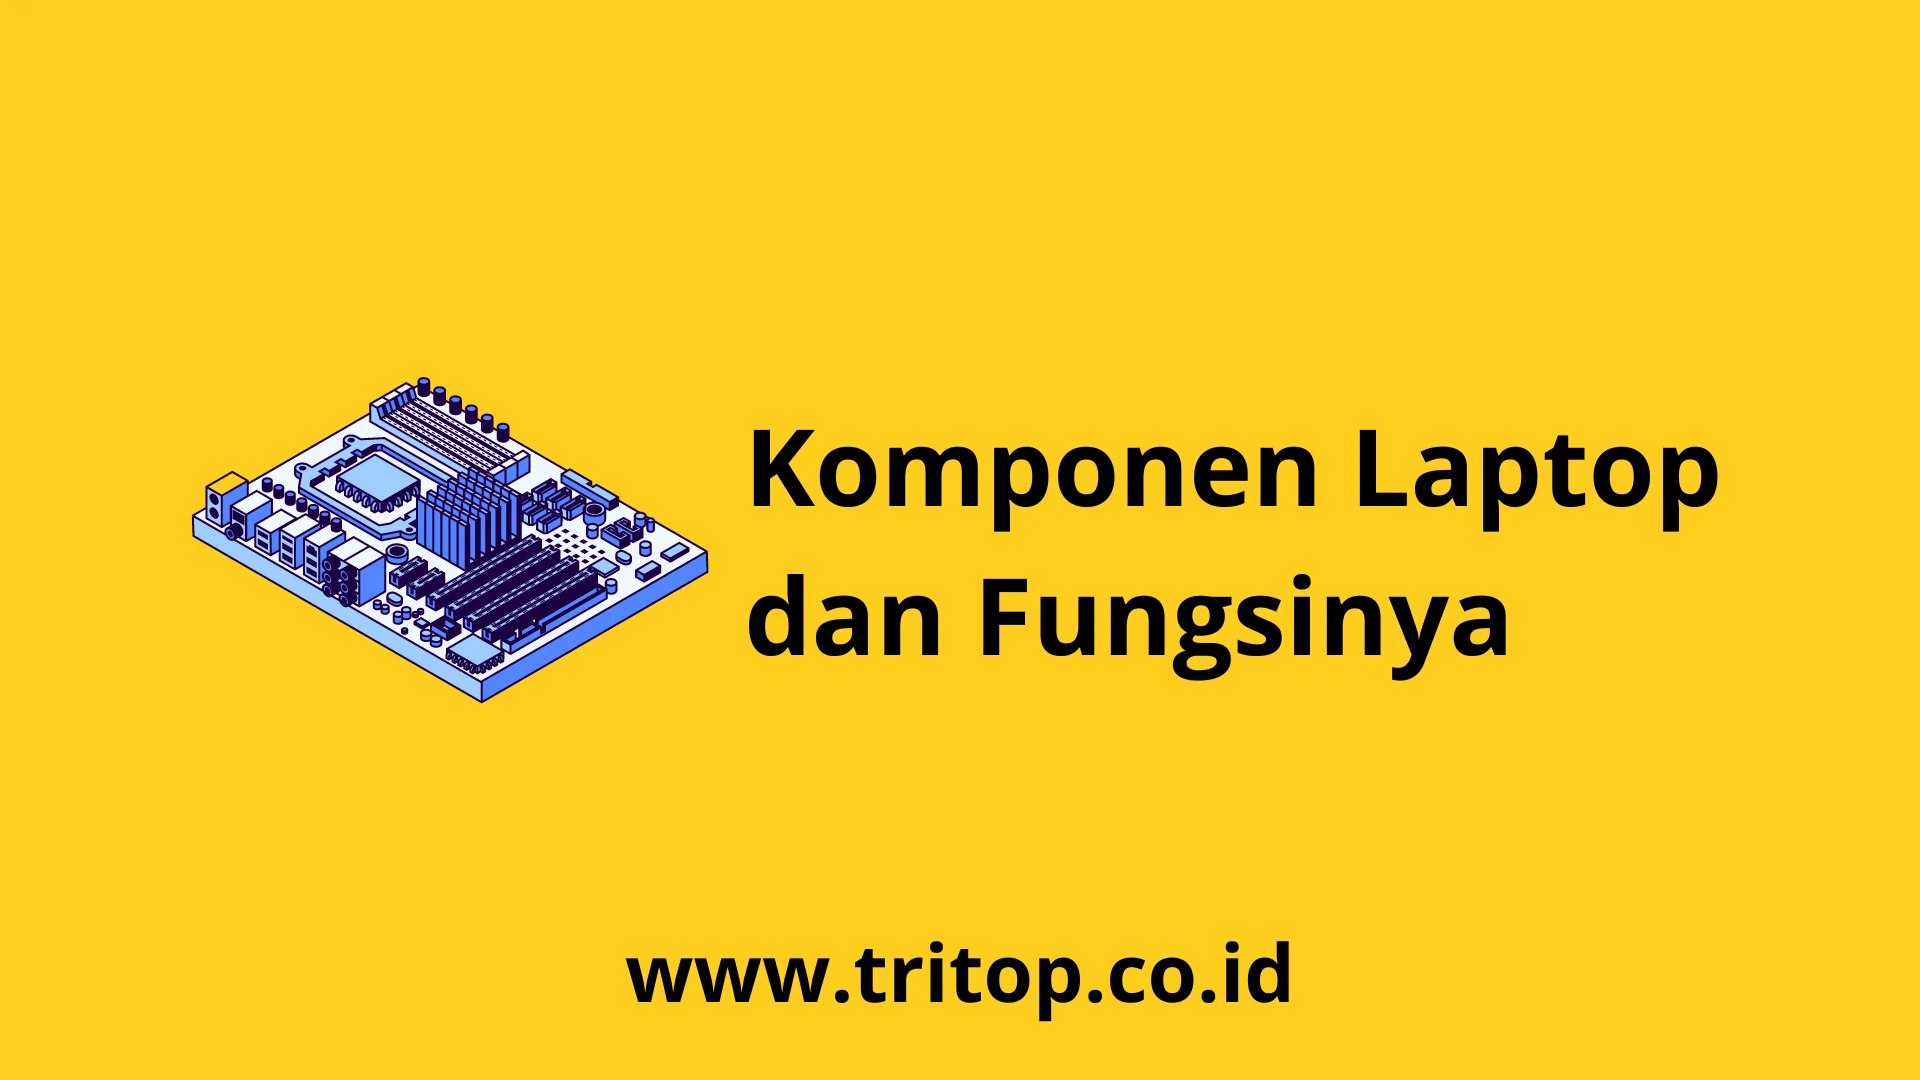 Komponen Laptop dan Fungsinya Tritop.co.id